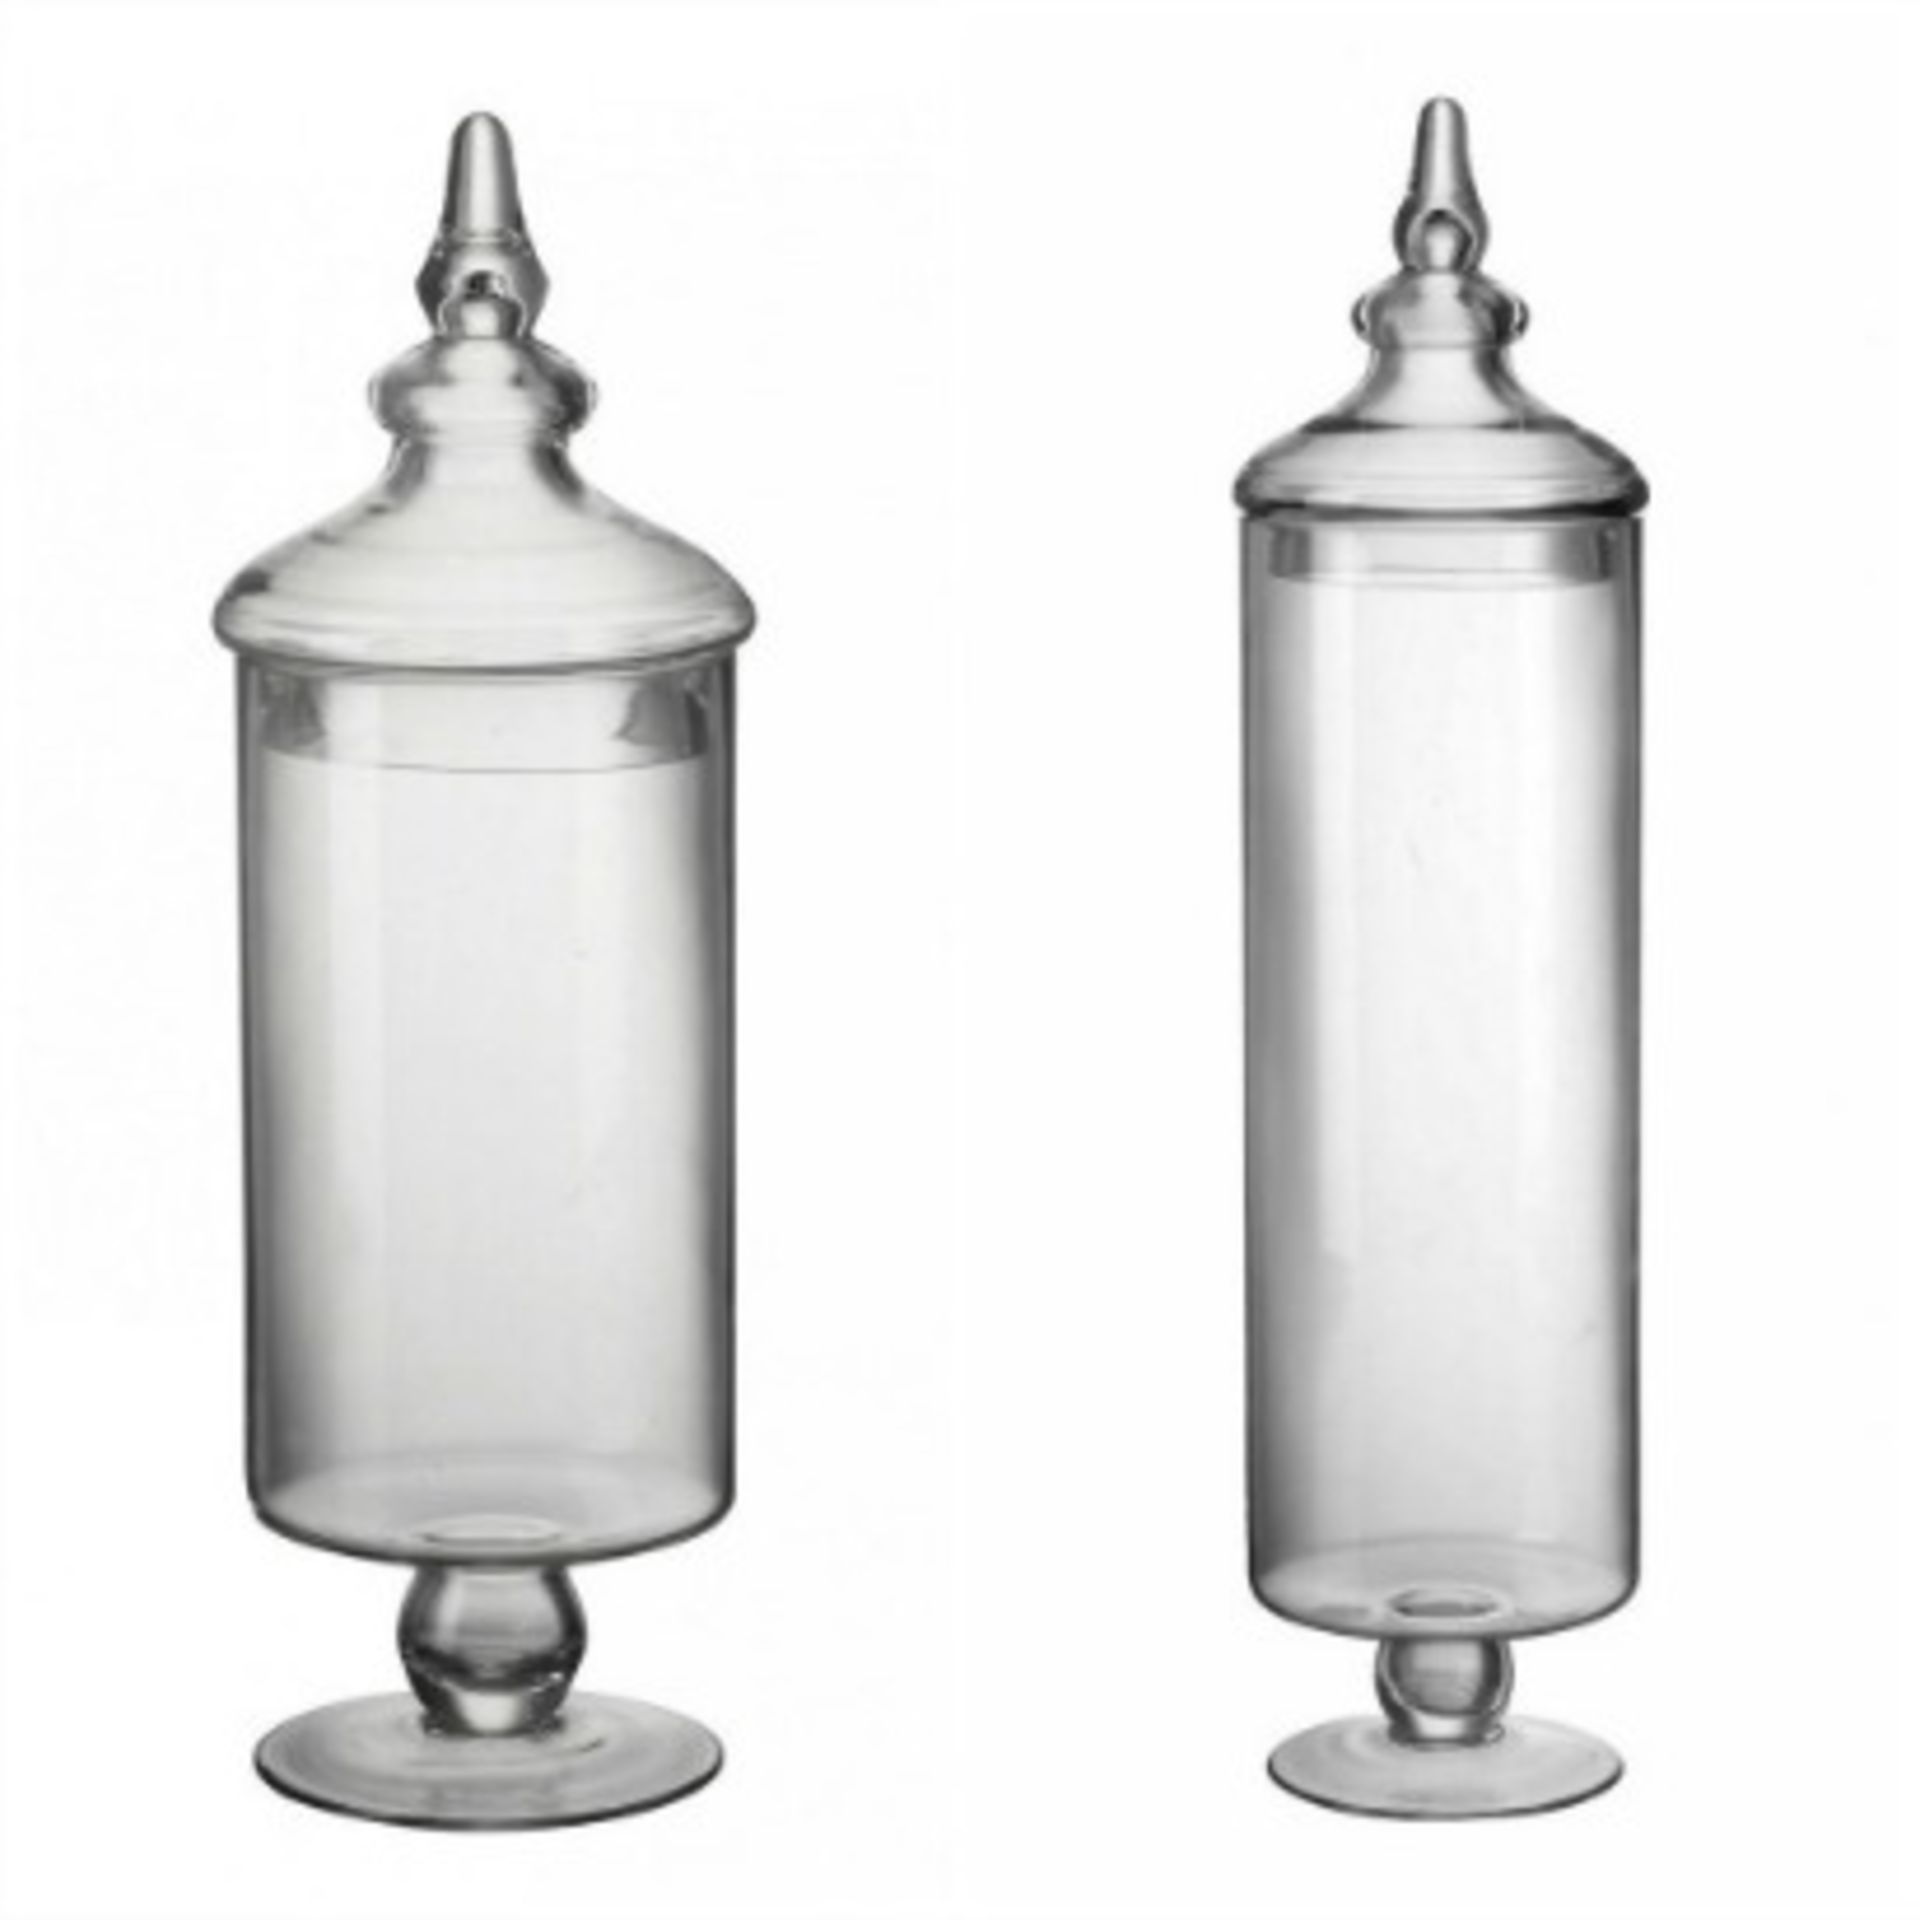 8 X GLASS SWEETIE JAR, SOAP DISH, ICE/BOTTLE BUCKET, GLASSWEAR, ETC. RRP £174.85 - Image 3 of 9